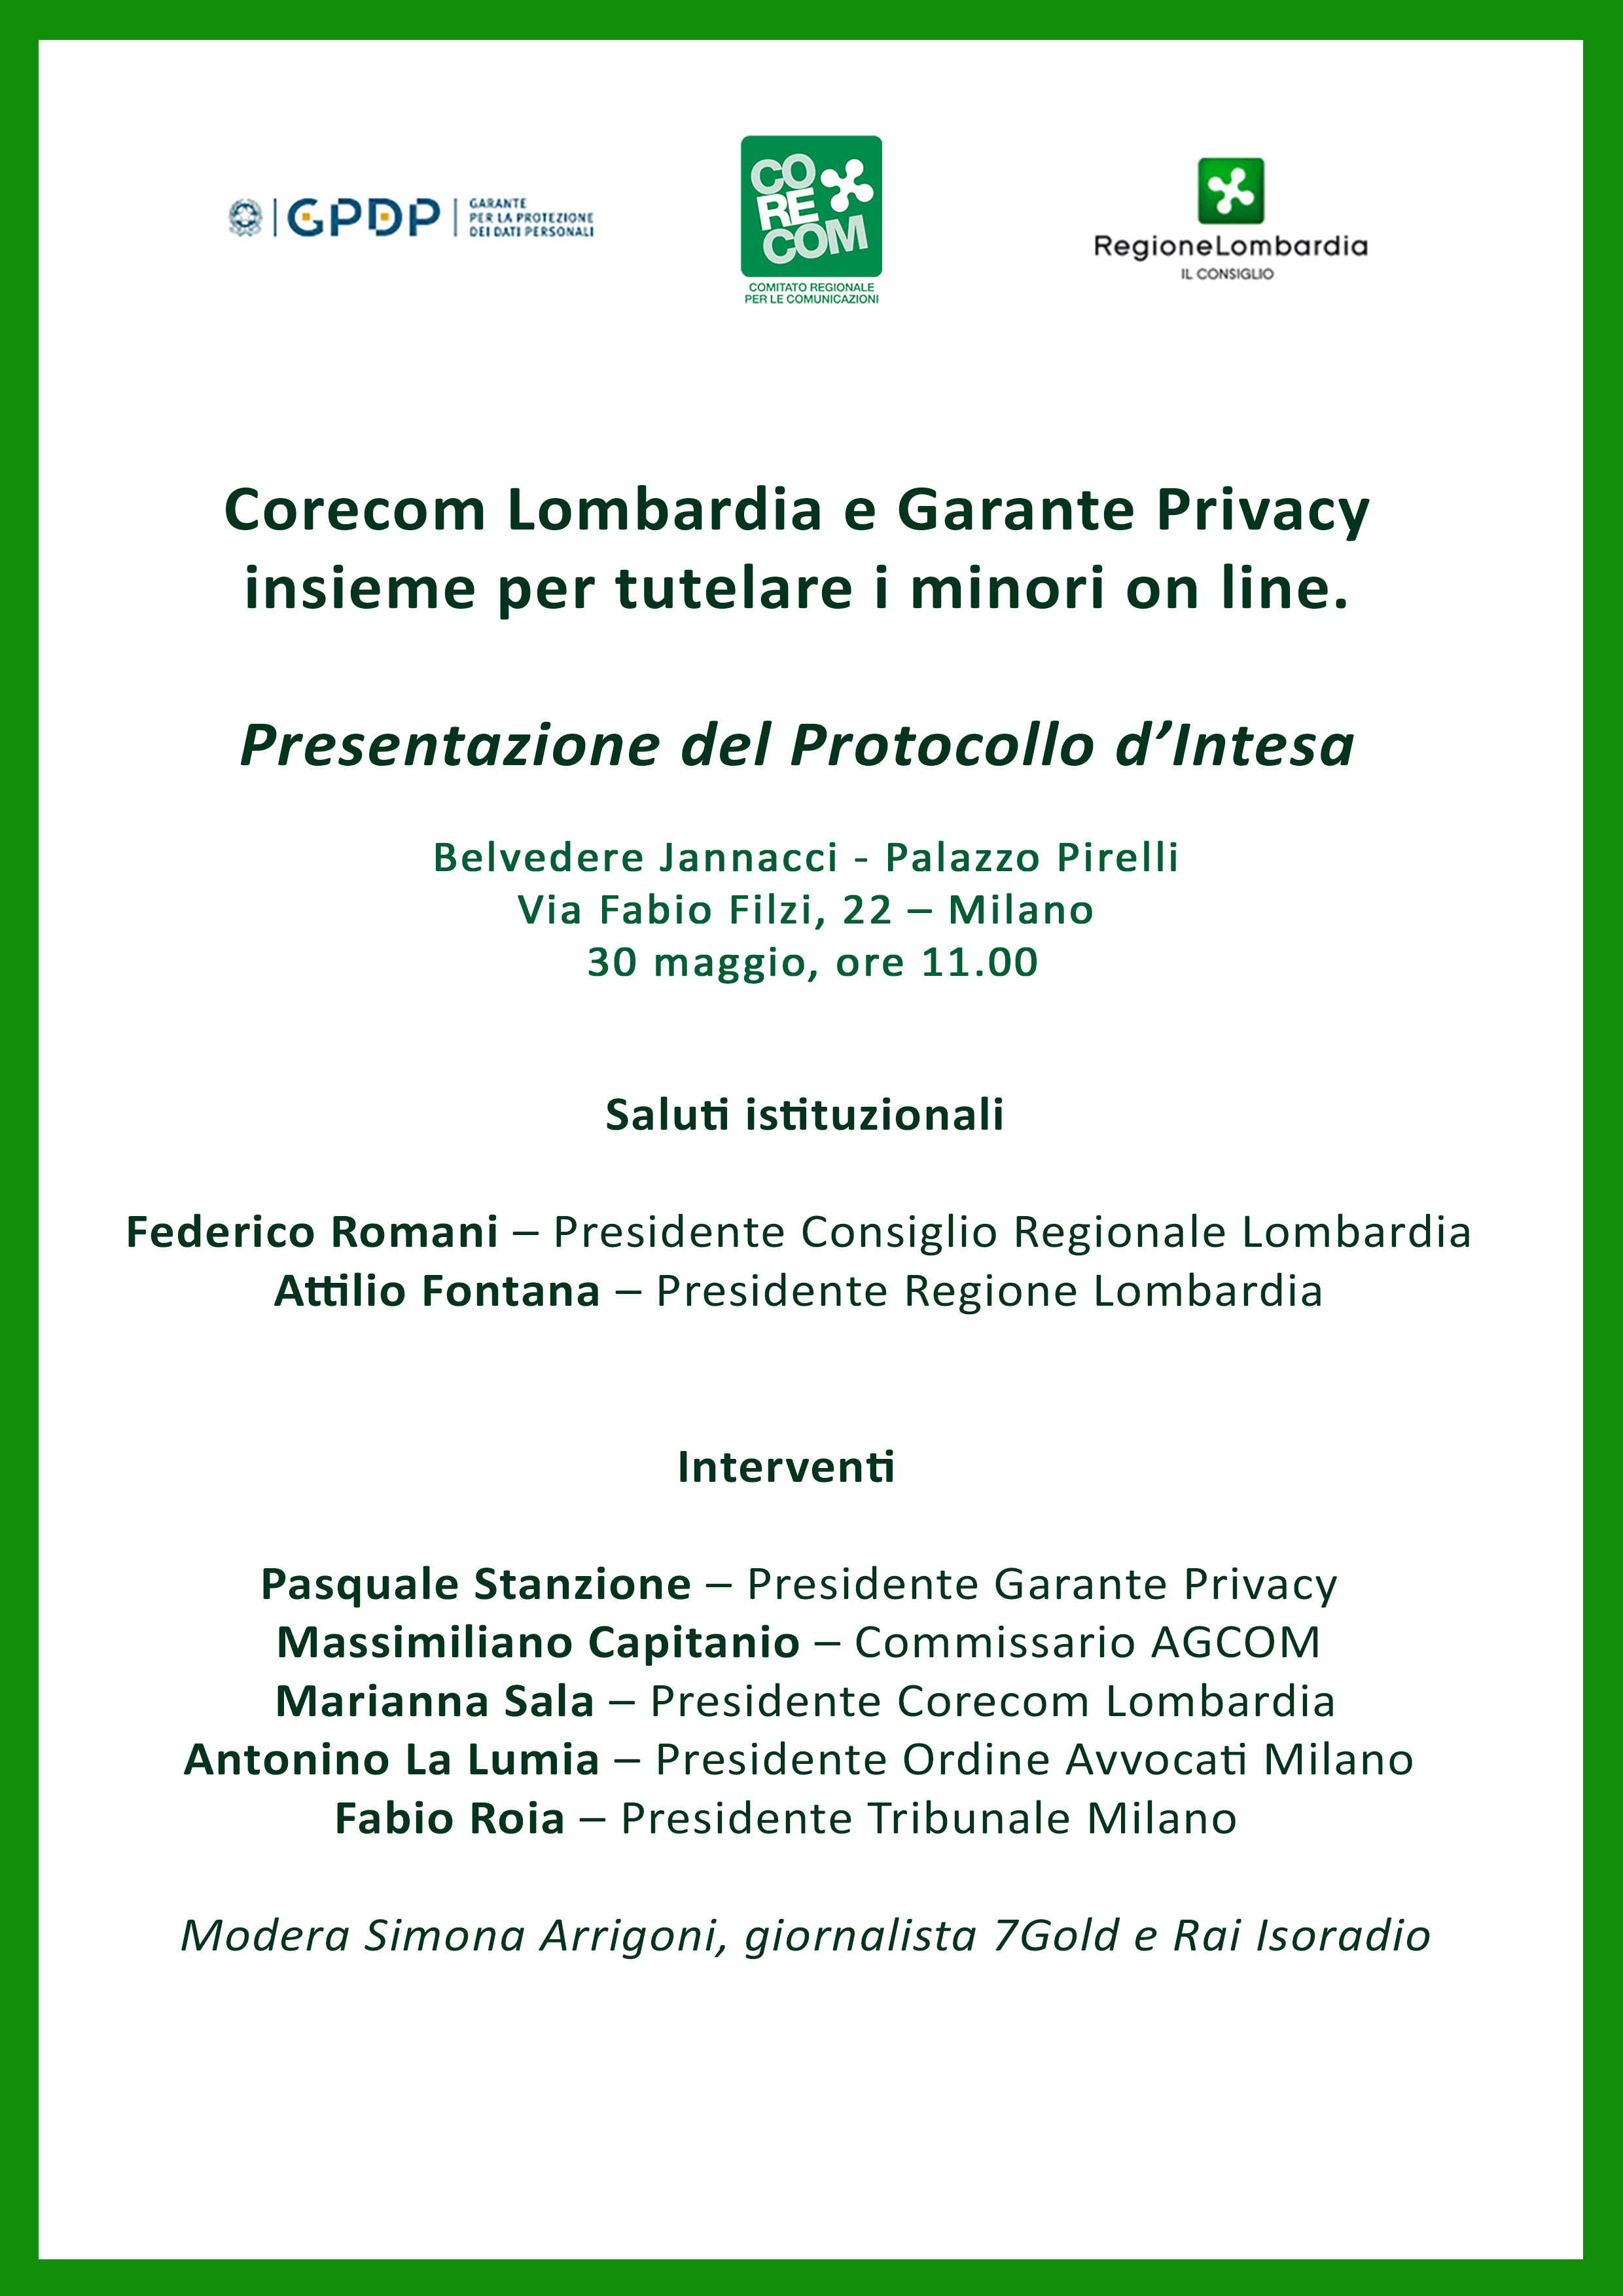 Presentazione del Protocollo d'intesa tra Garante e Corecom Lombardia